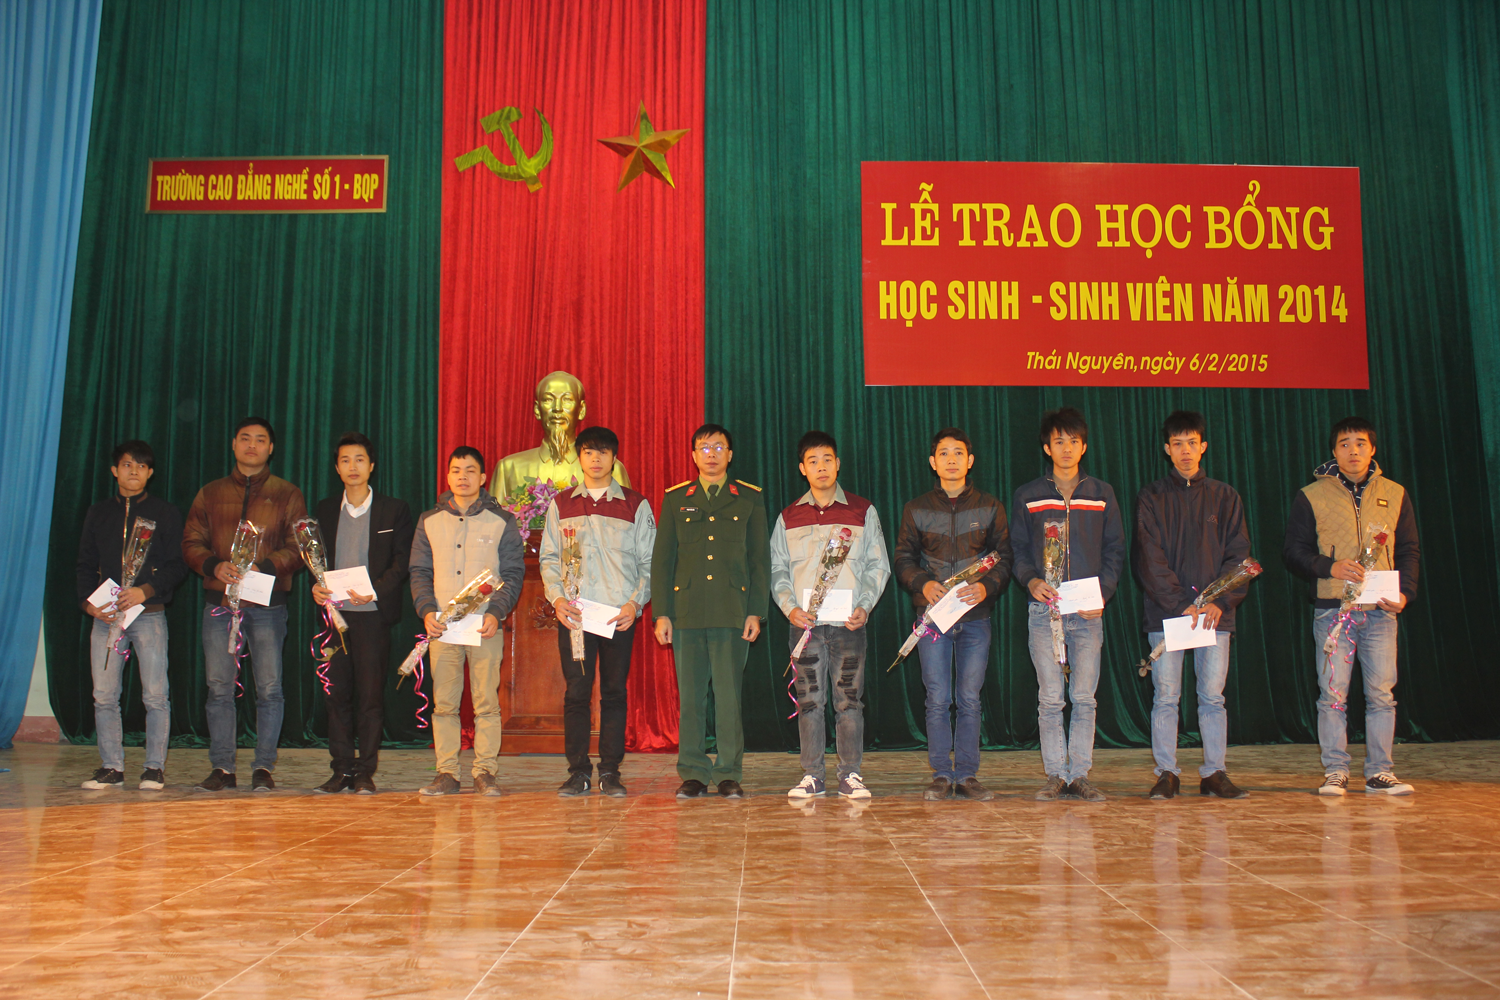 Đồng chí Thượng tá Phạm Văn Hòa – Hiệu trưởng nhà trường trao thưởng cho các sinh viên